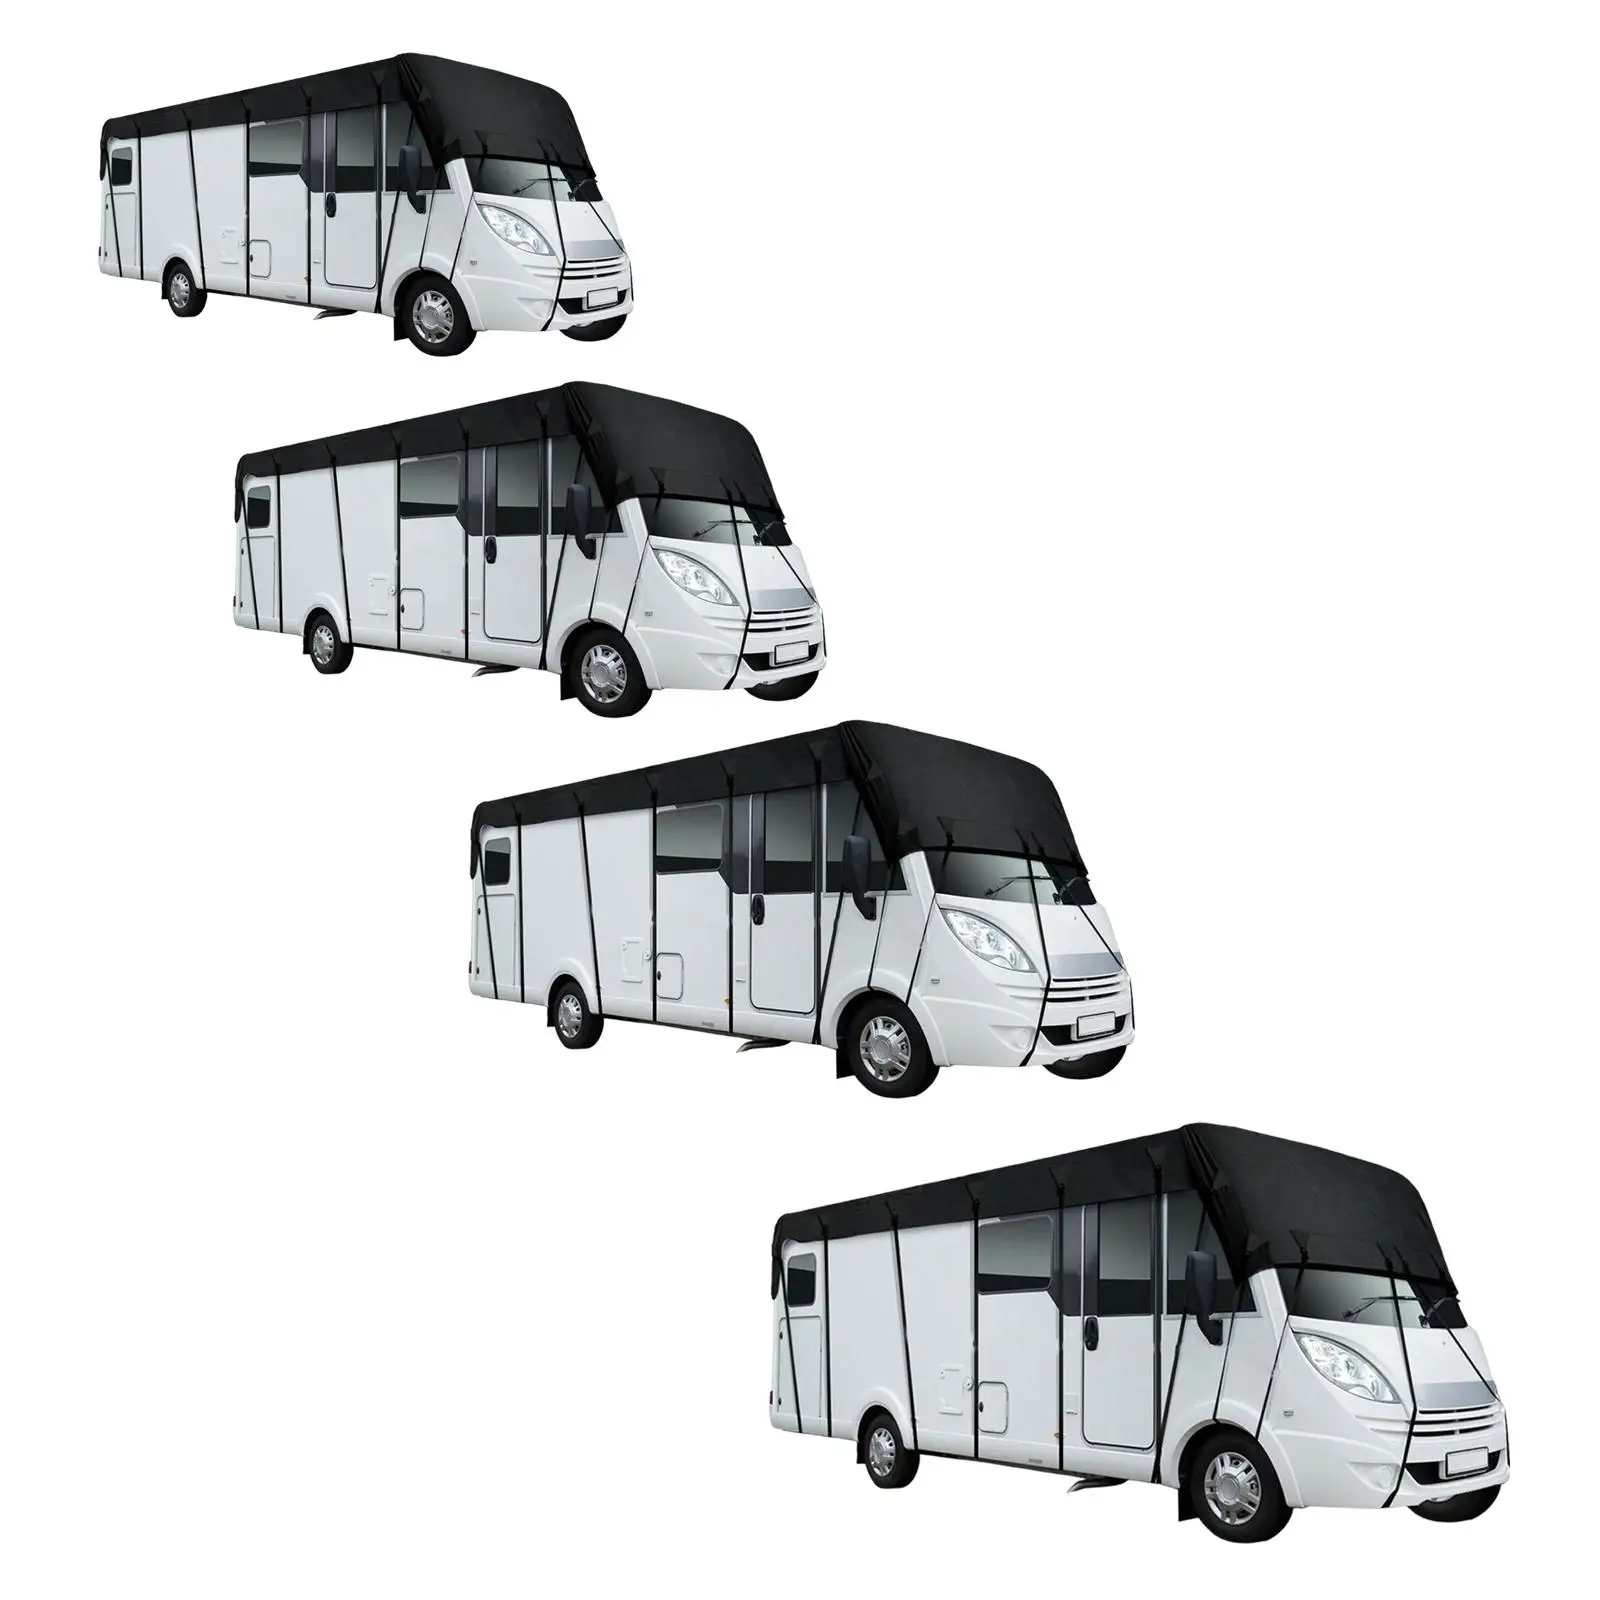 

Upgraded RV Caravan Roof Cover Dustproof Wear Resistant for Outdoor Travel Caravan